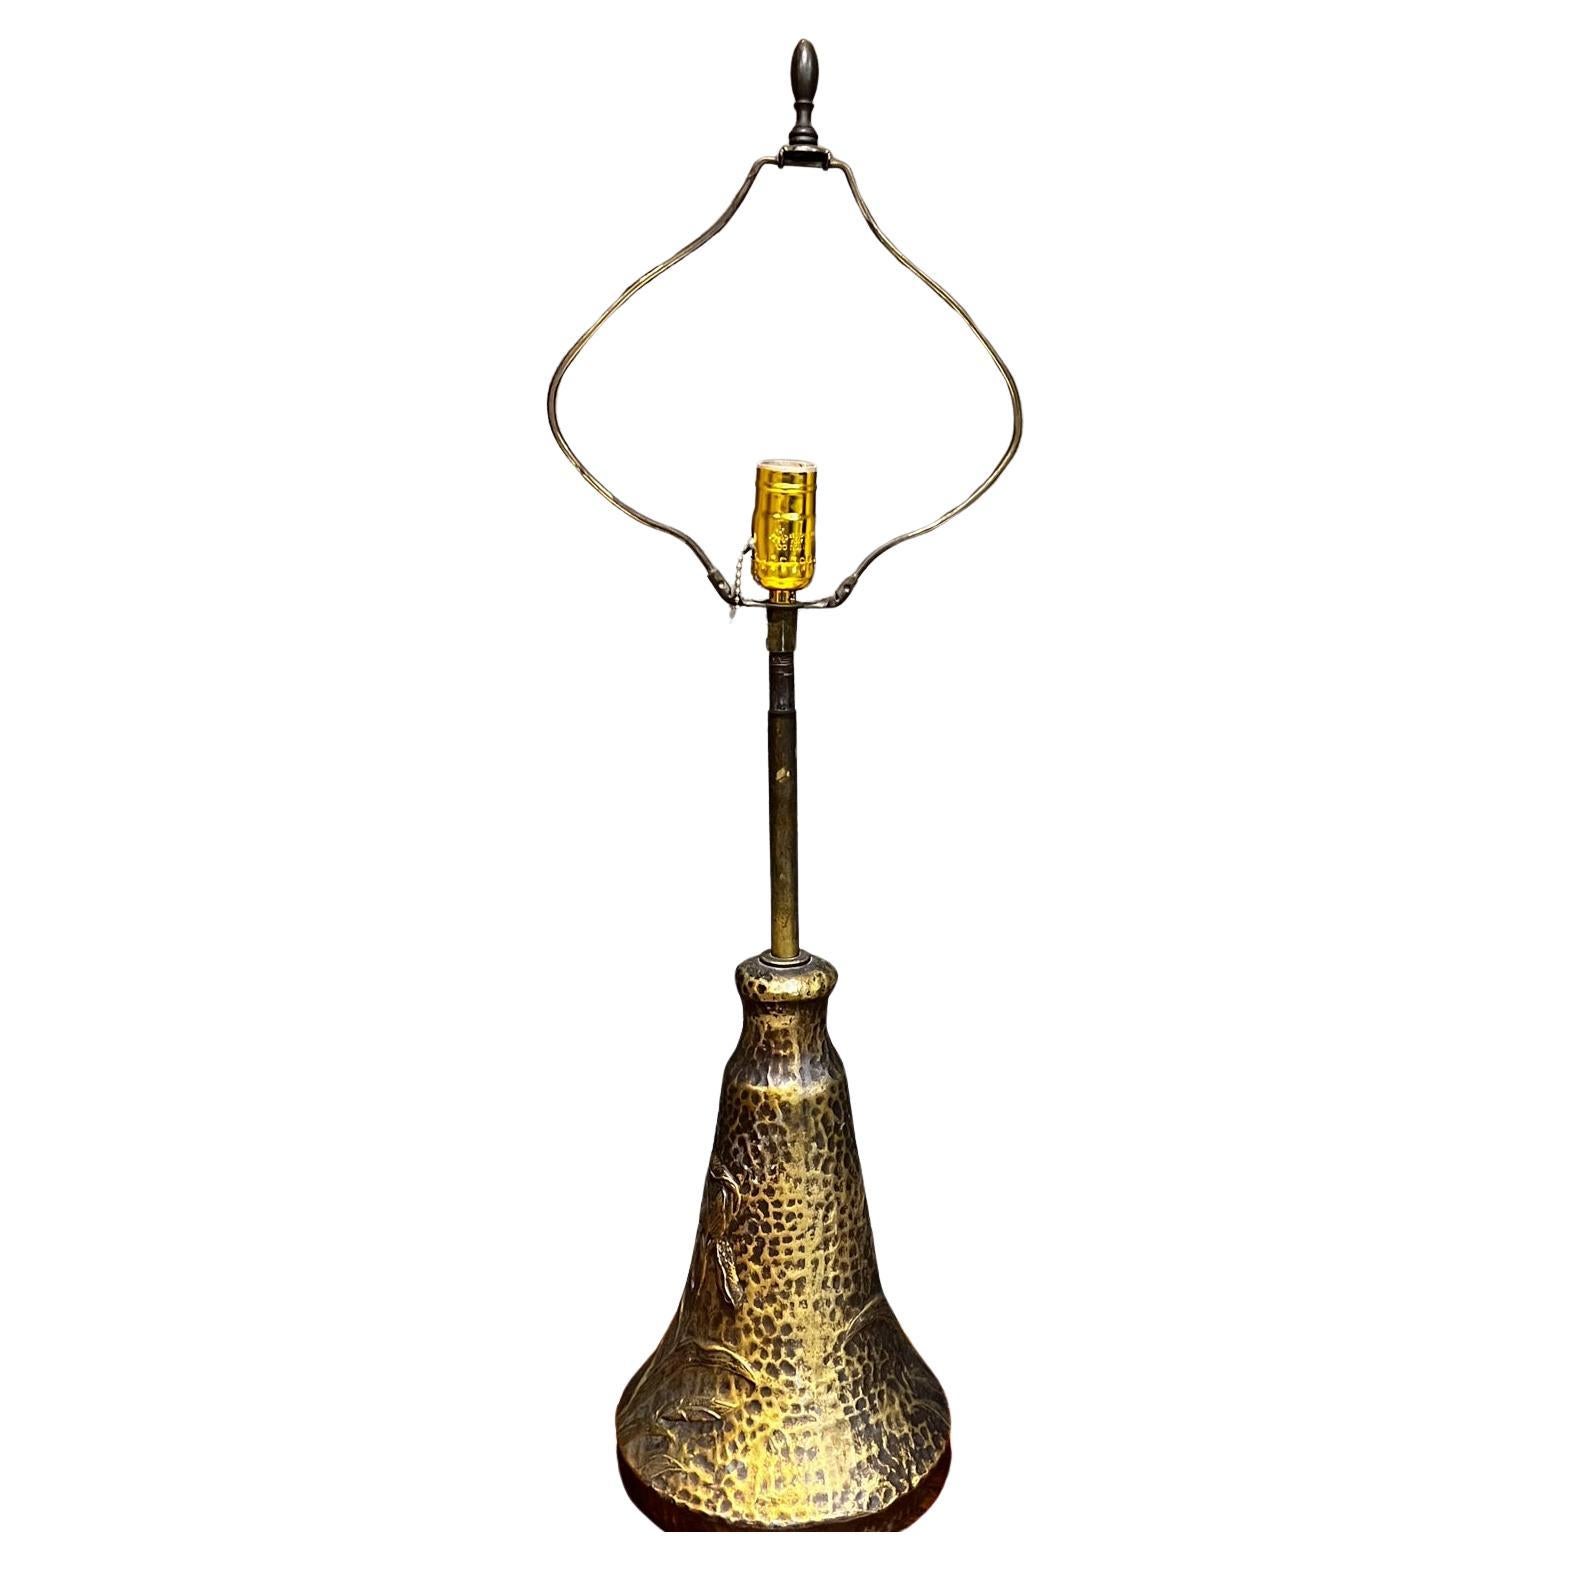 1970s Style Arthur Court Art Nouveau Faux Bronze Table Lamp For Sale